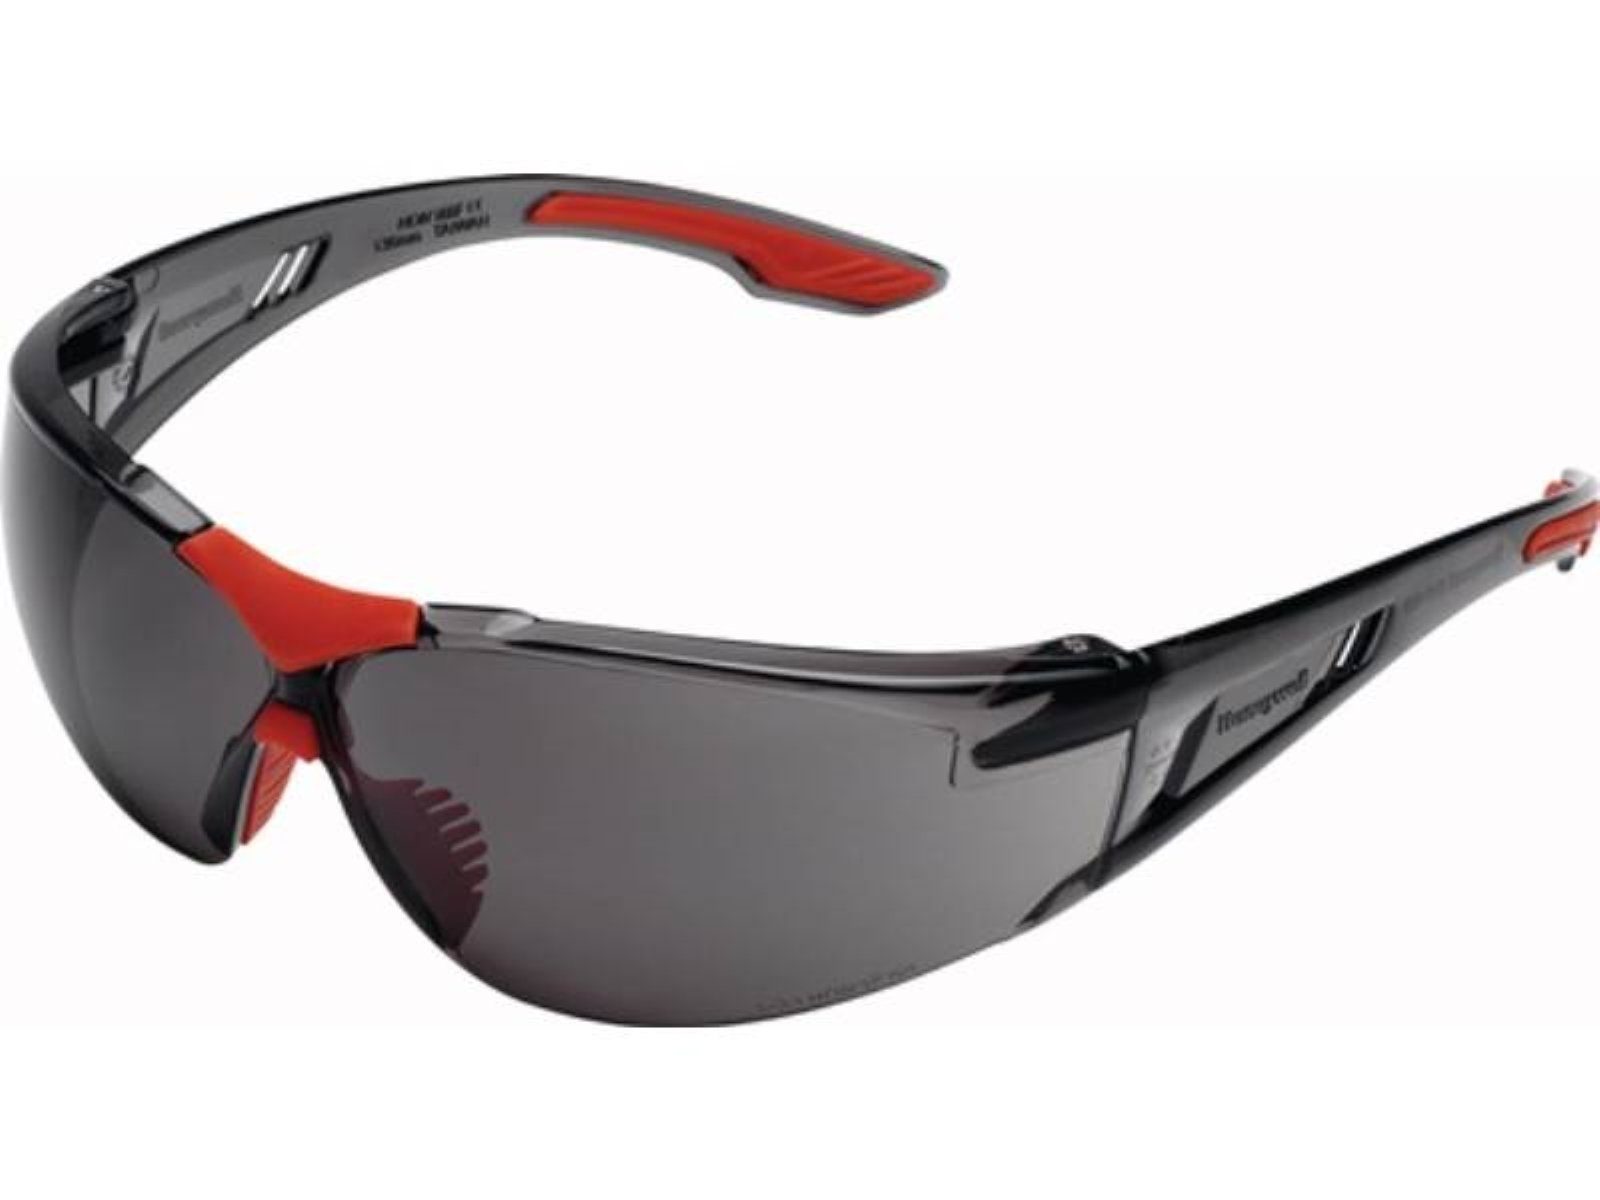 Honeywell Arbeitsschutzbrille Schutzbrille SVP-400 EN 166 Bügel grau,Scheiben grau getönt HONEYWEL